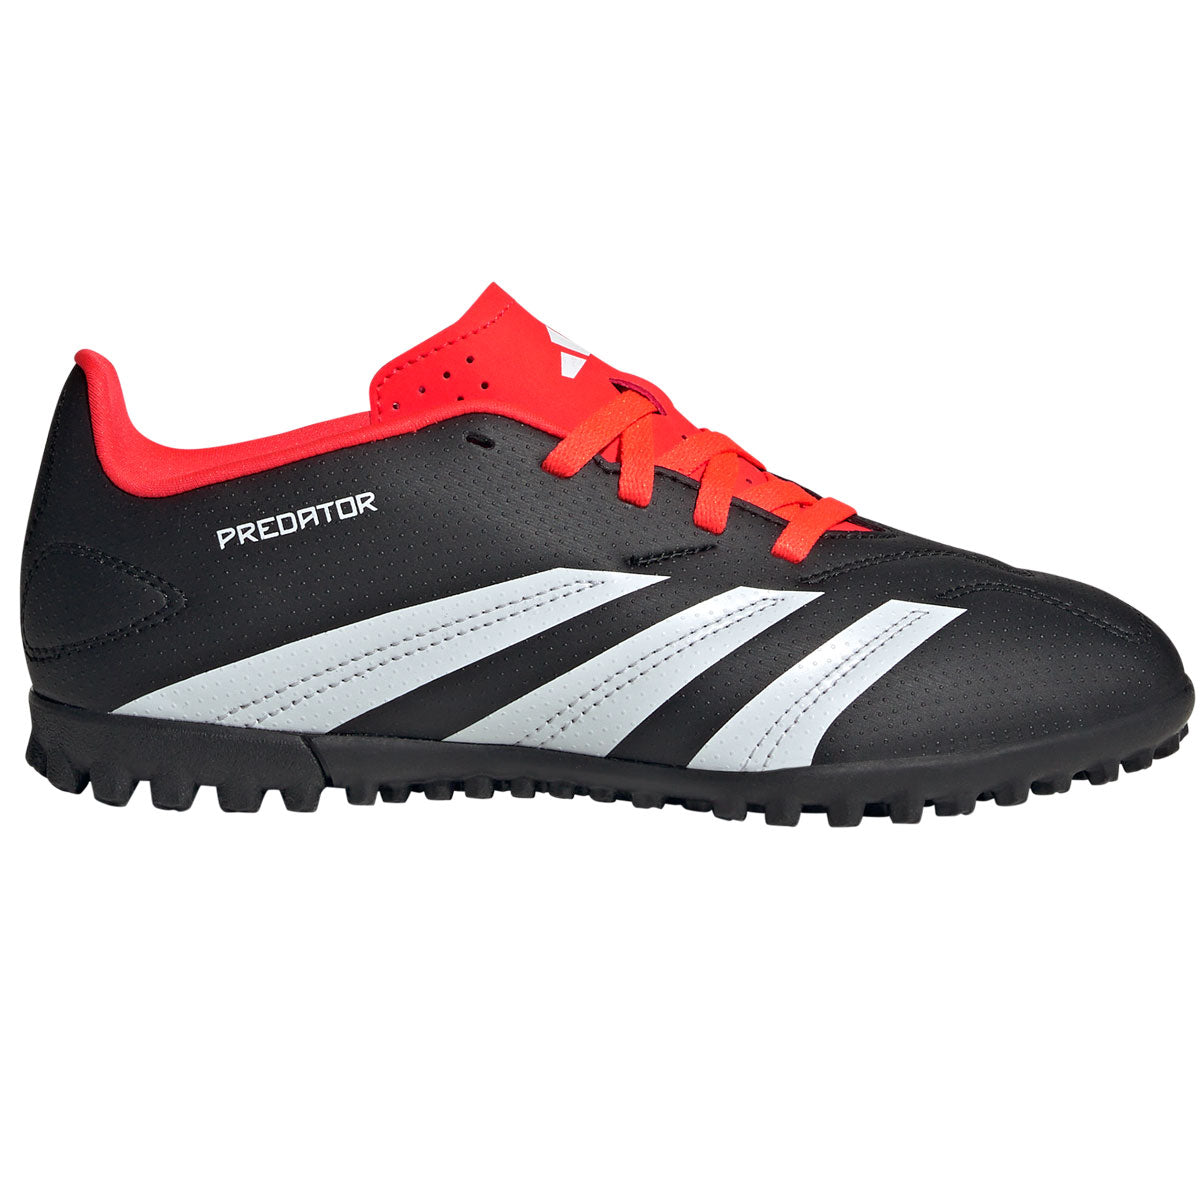 adidas Predator Club Turf Football Boots - Youth - Black/Red